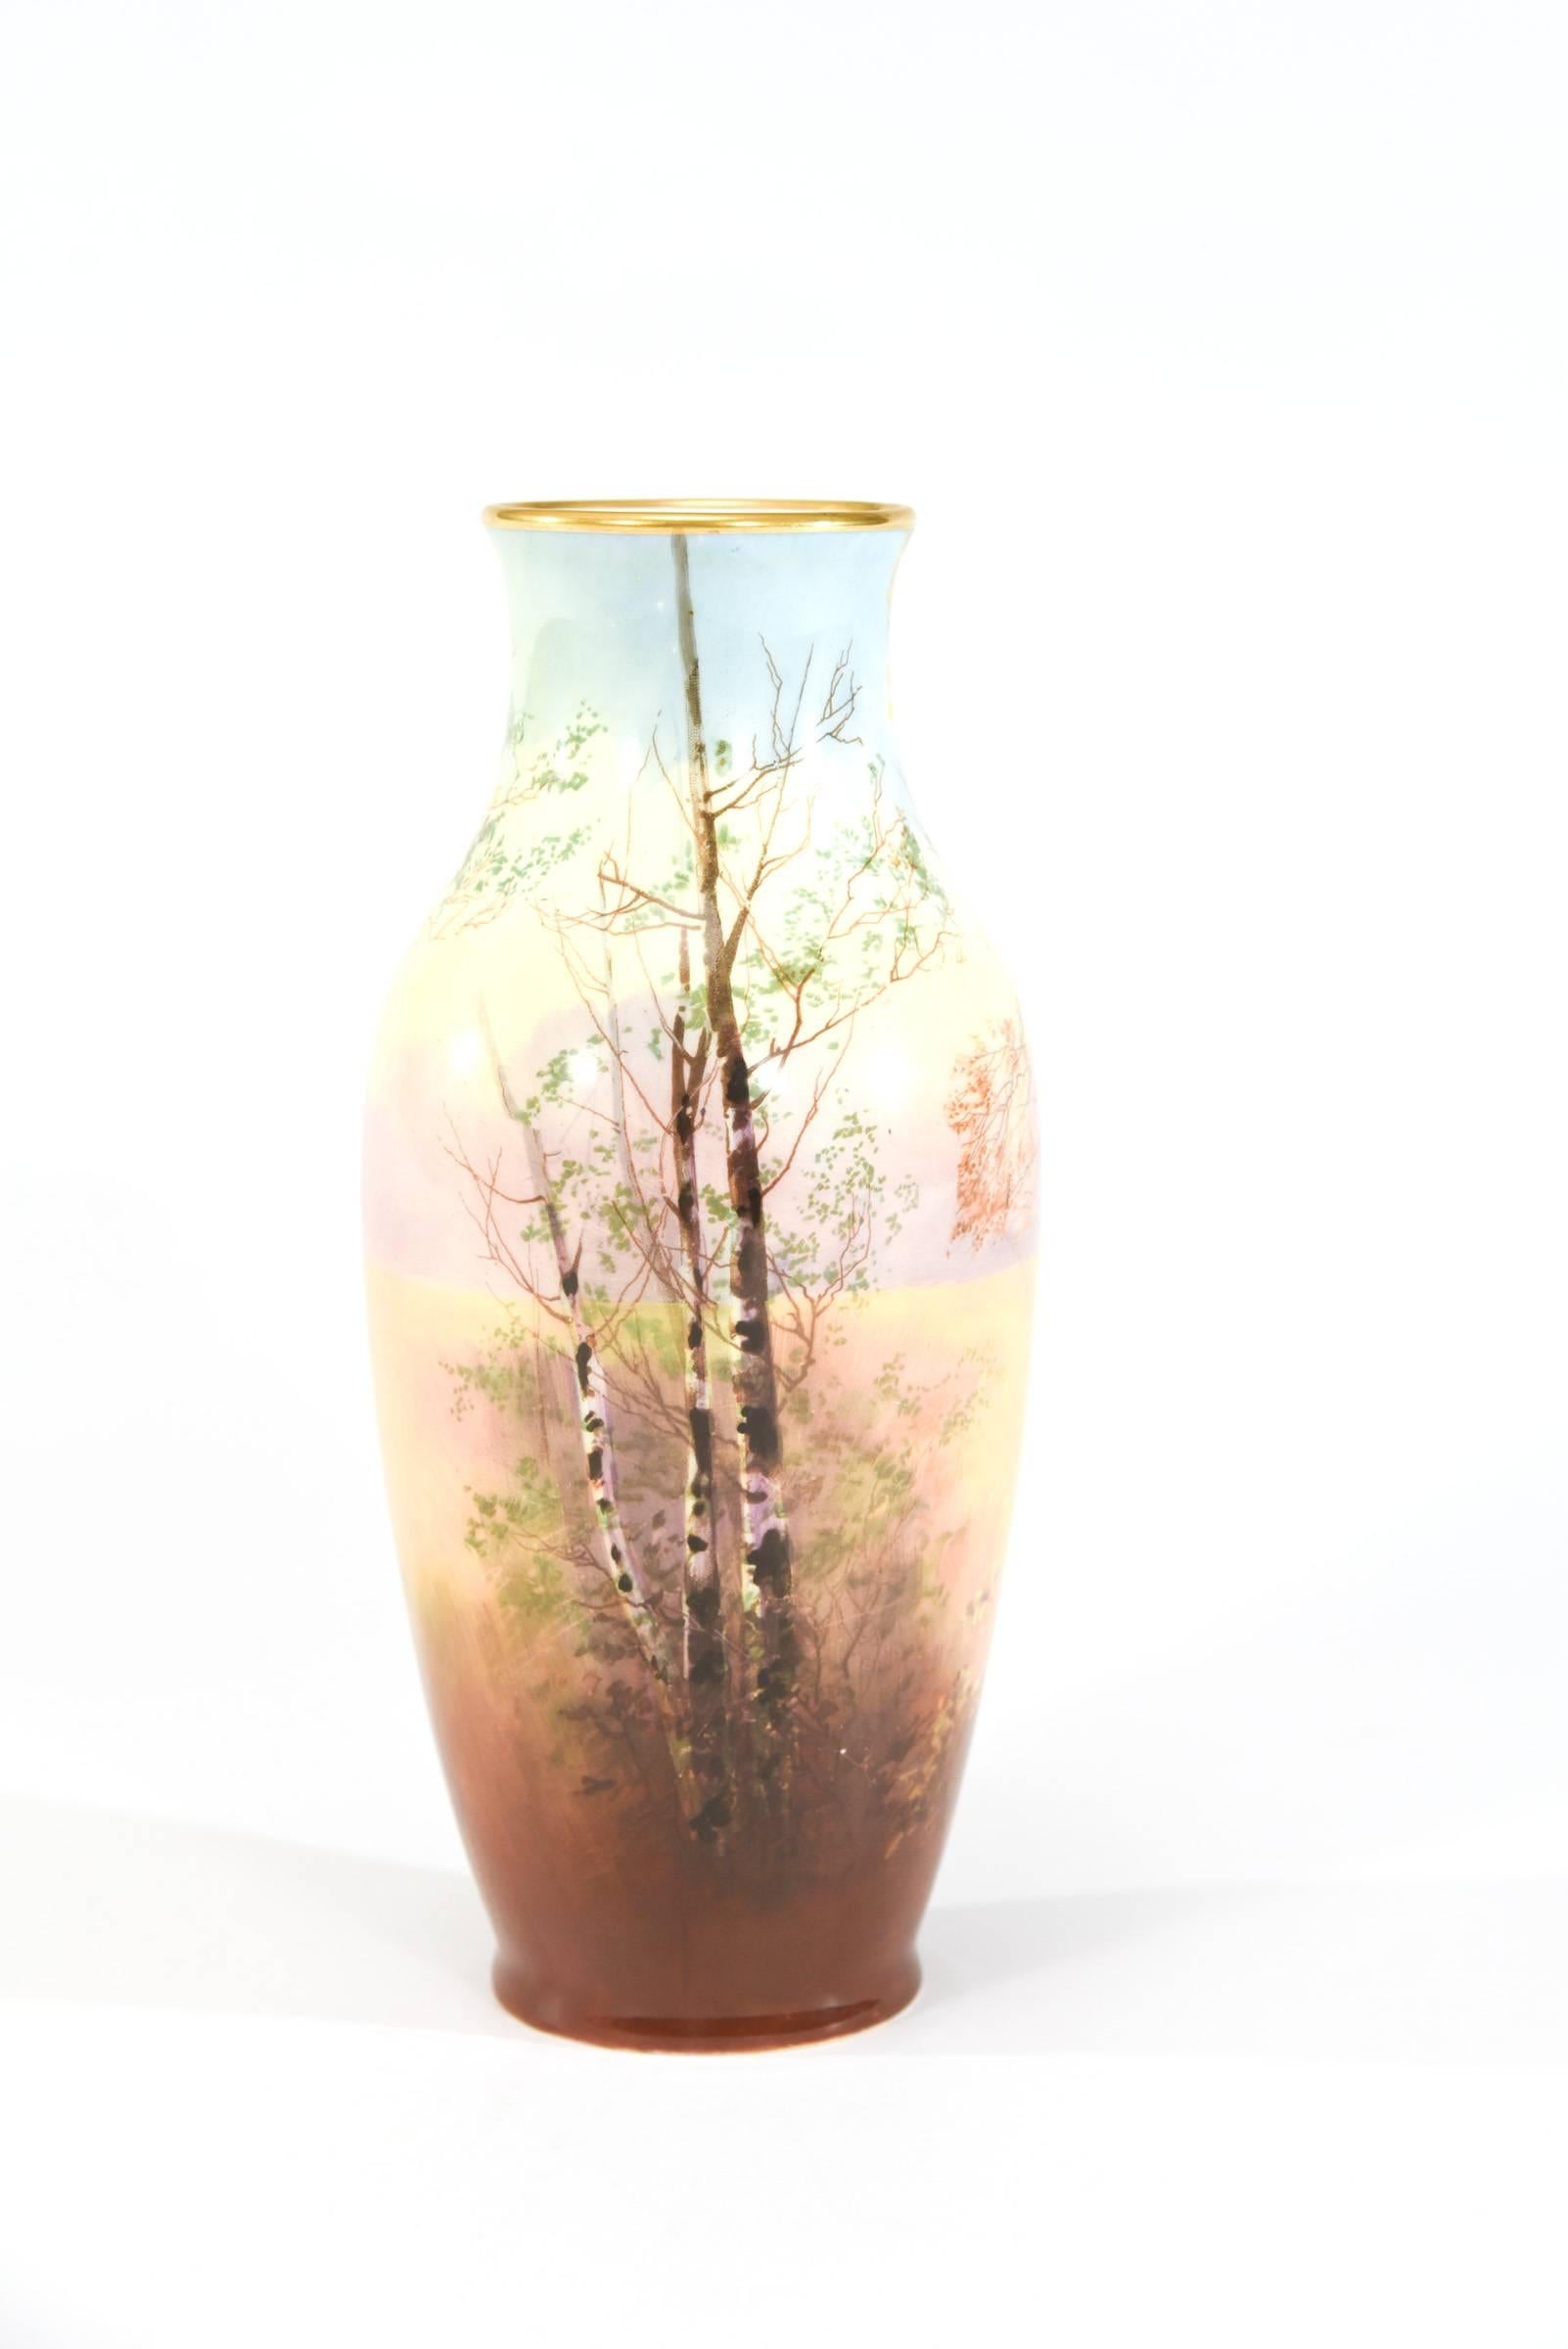 Ce vase en porcelaine finement décoré a été fabriqué par Royal Doulton. Il est peint à la main et signé par l'artiste J. Price. Il était connu pour ses magnifiques paysages et ce vase est décoré sur toute la circonférence. Mettant en vedette un